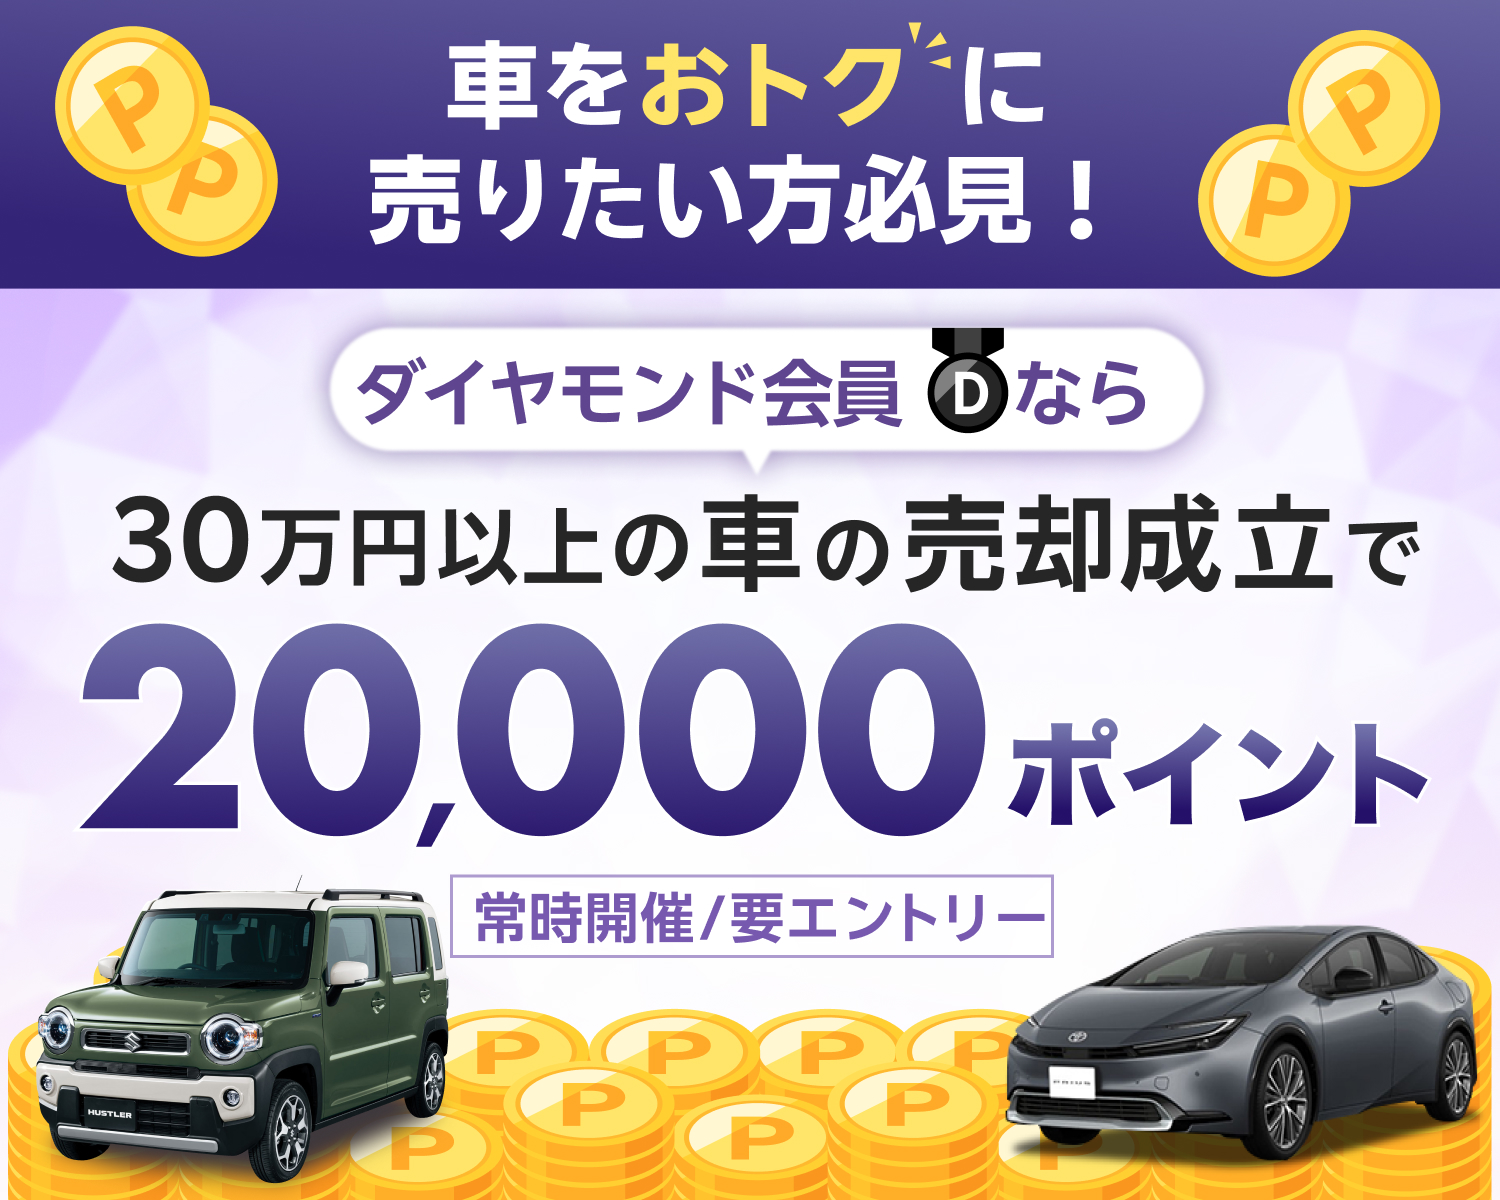 ダイヤモンド会員なら30万円以上の車の売却成立で20,000ポイント